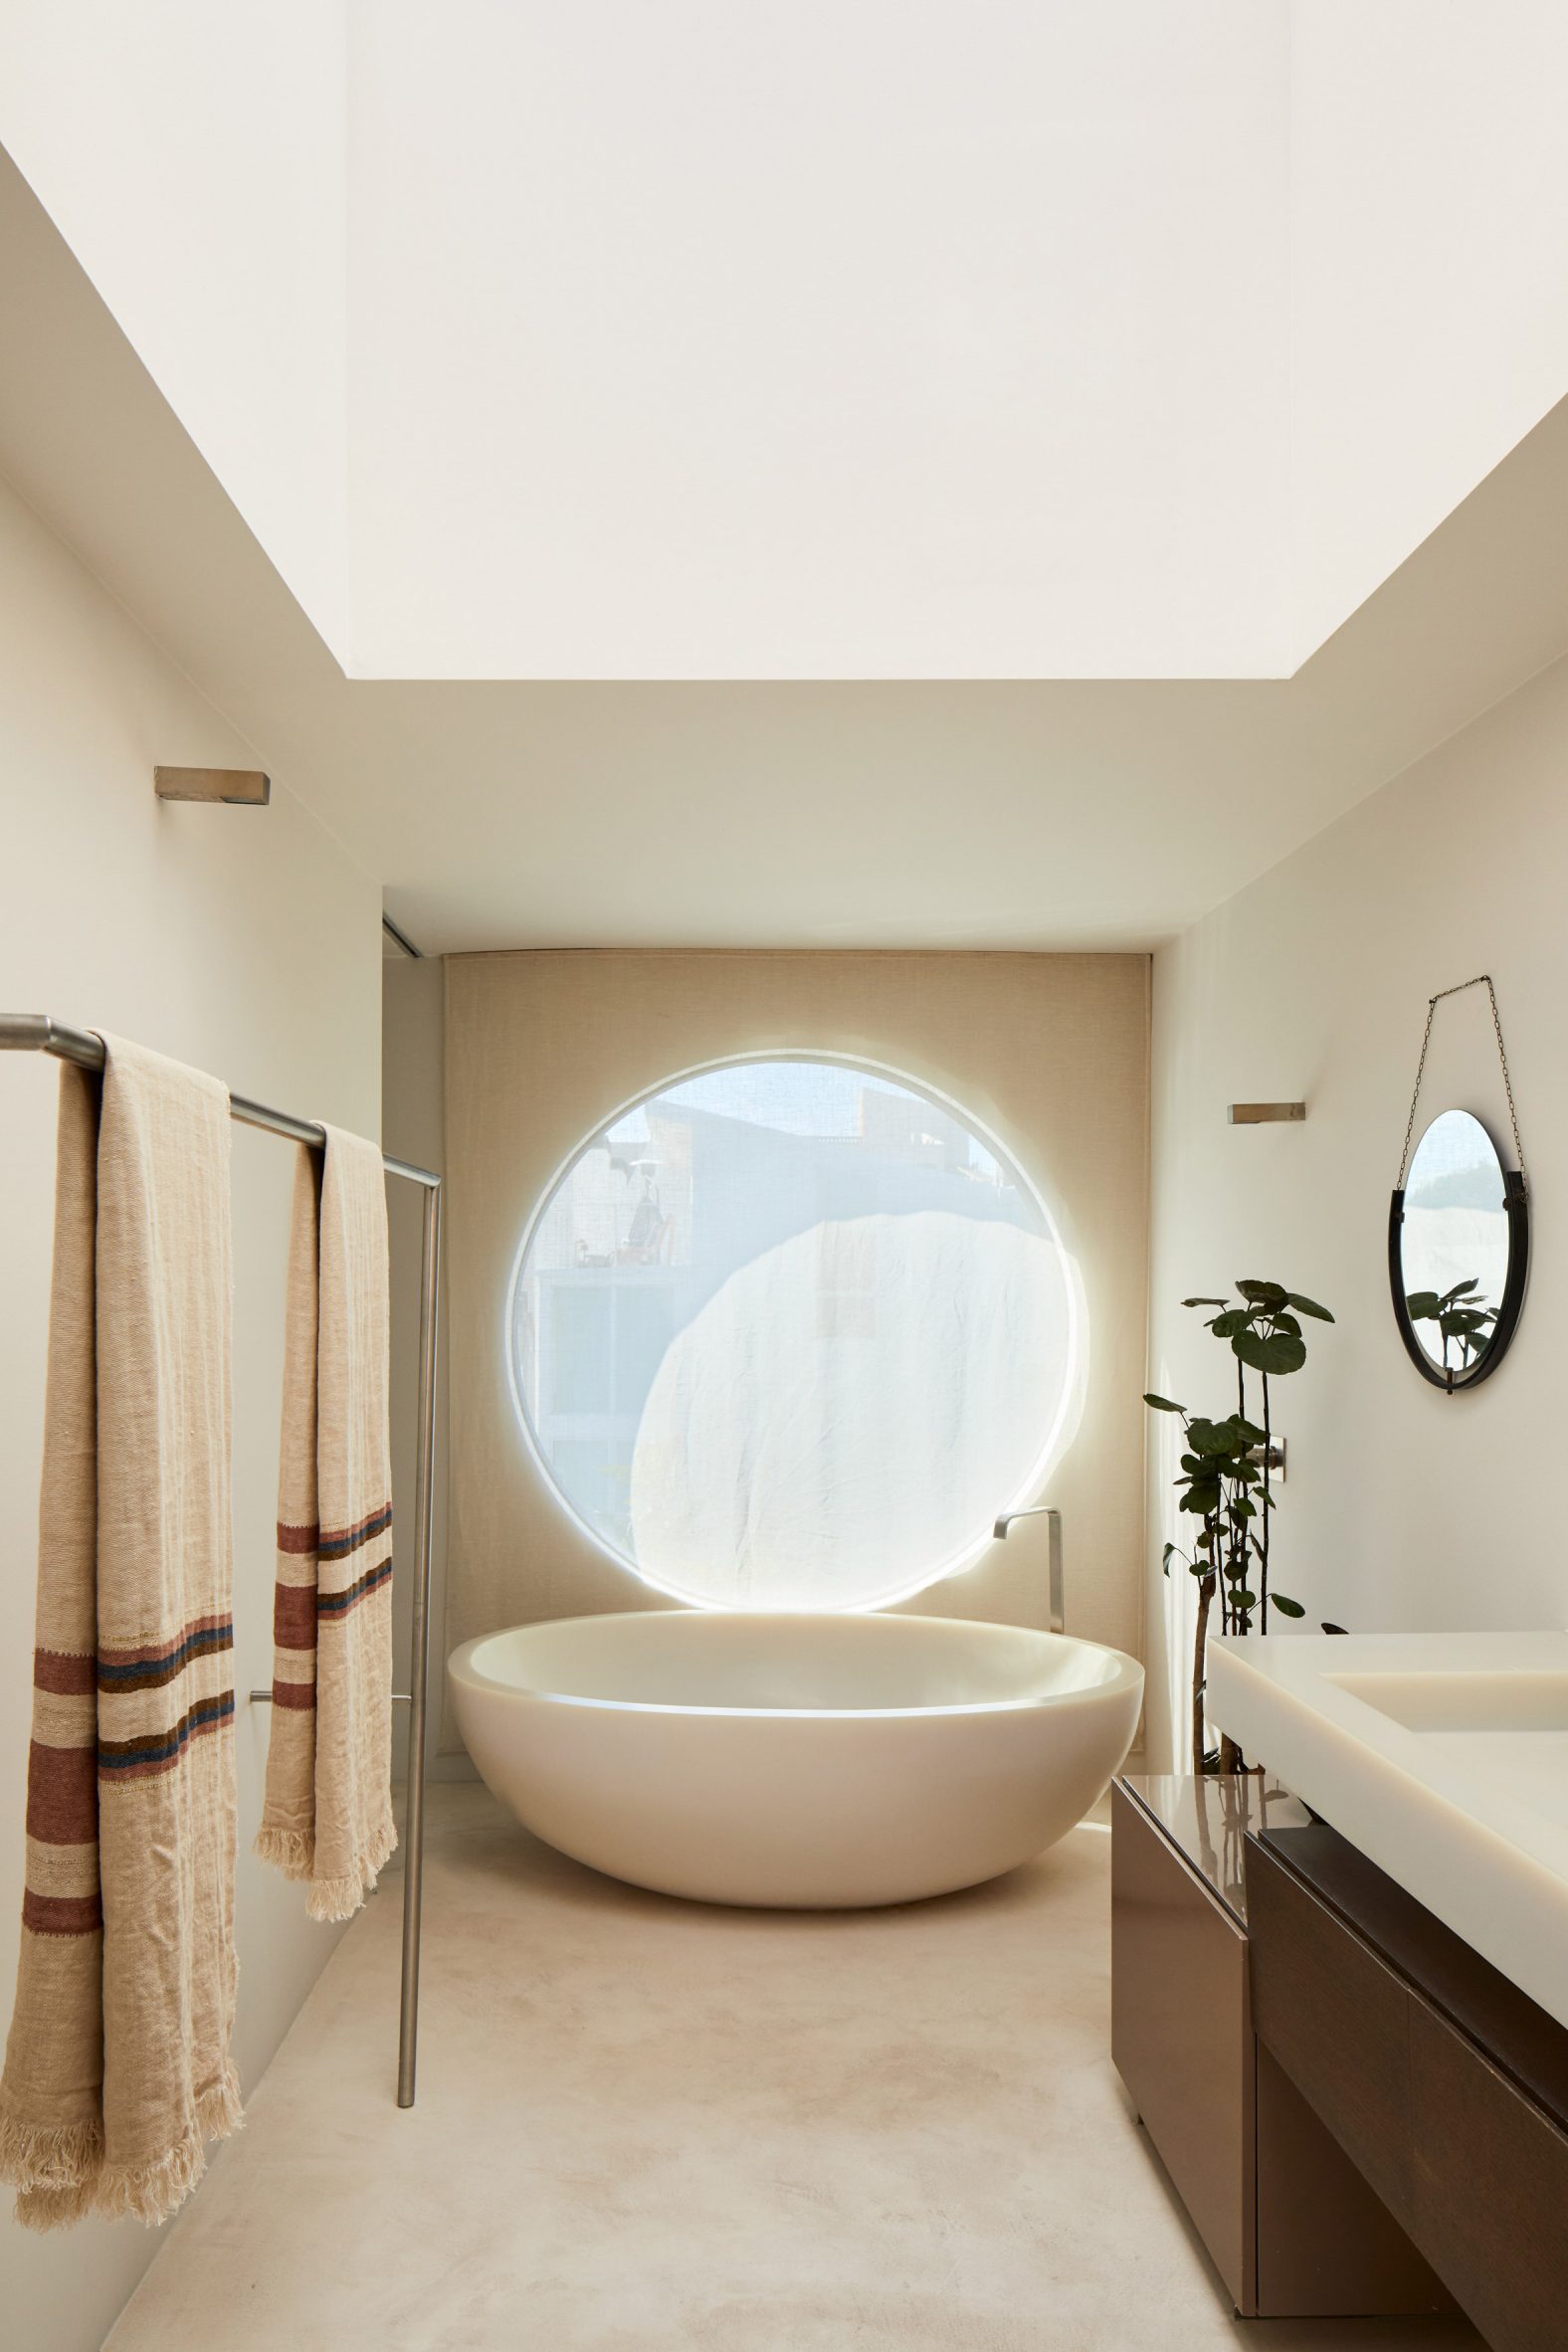 Bathroom with circular window